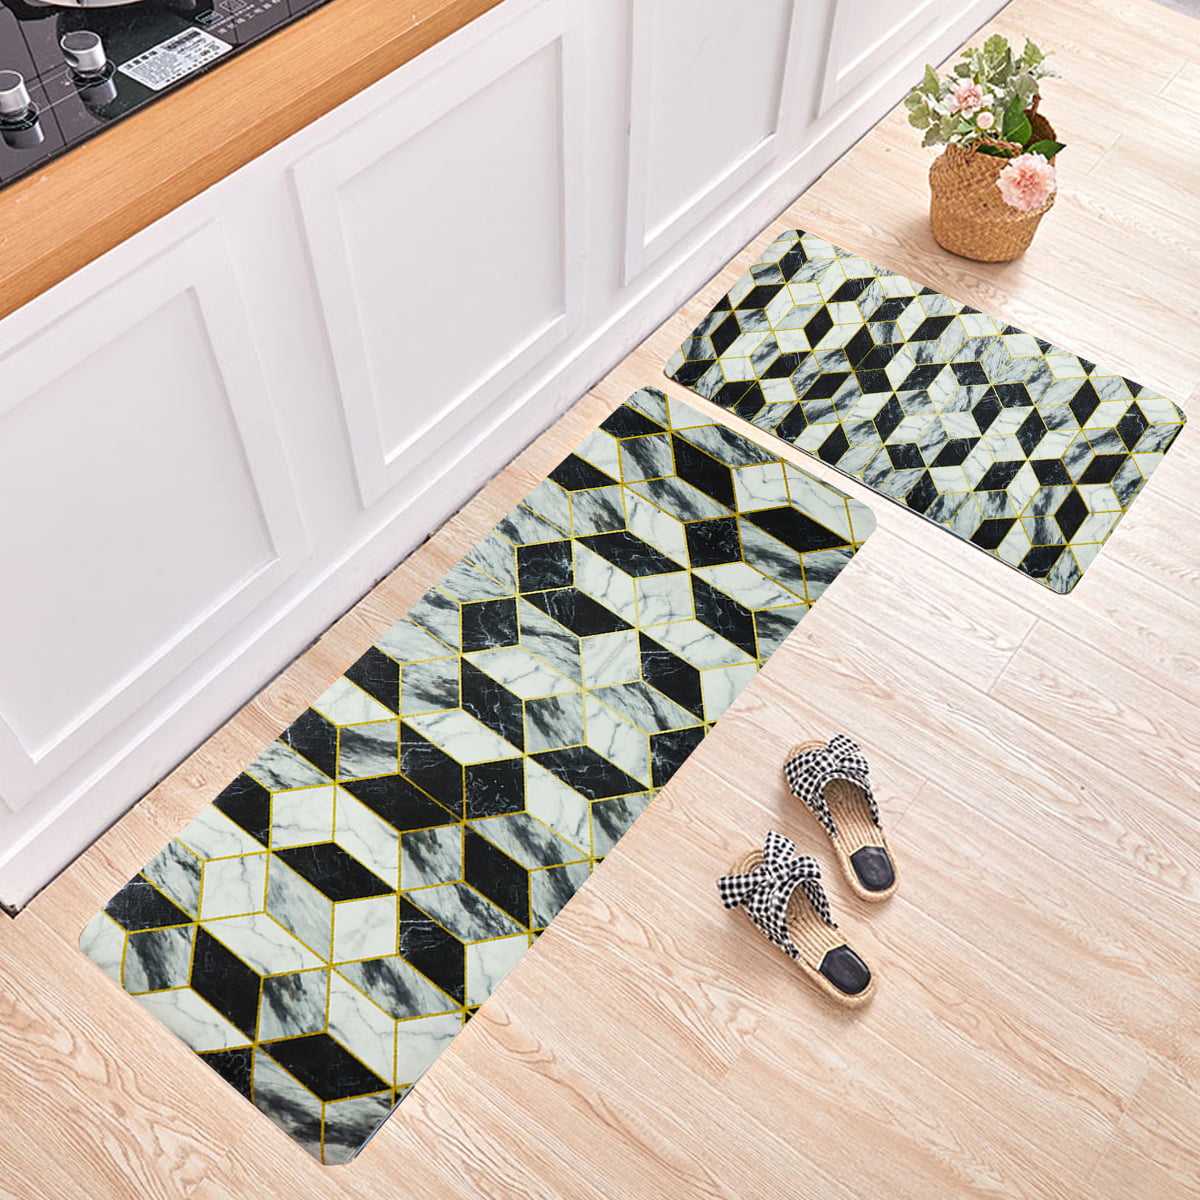 Details about   Kitchen Non-Slip Floor Mat Rug Door Large Runner Carpet Waterproof Oil-resistant 